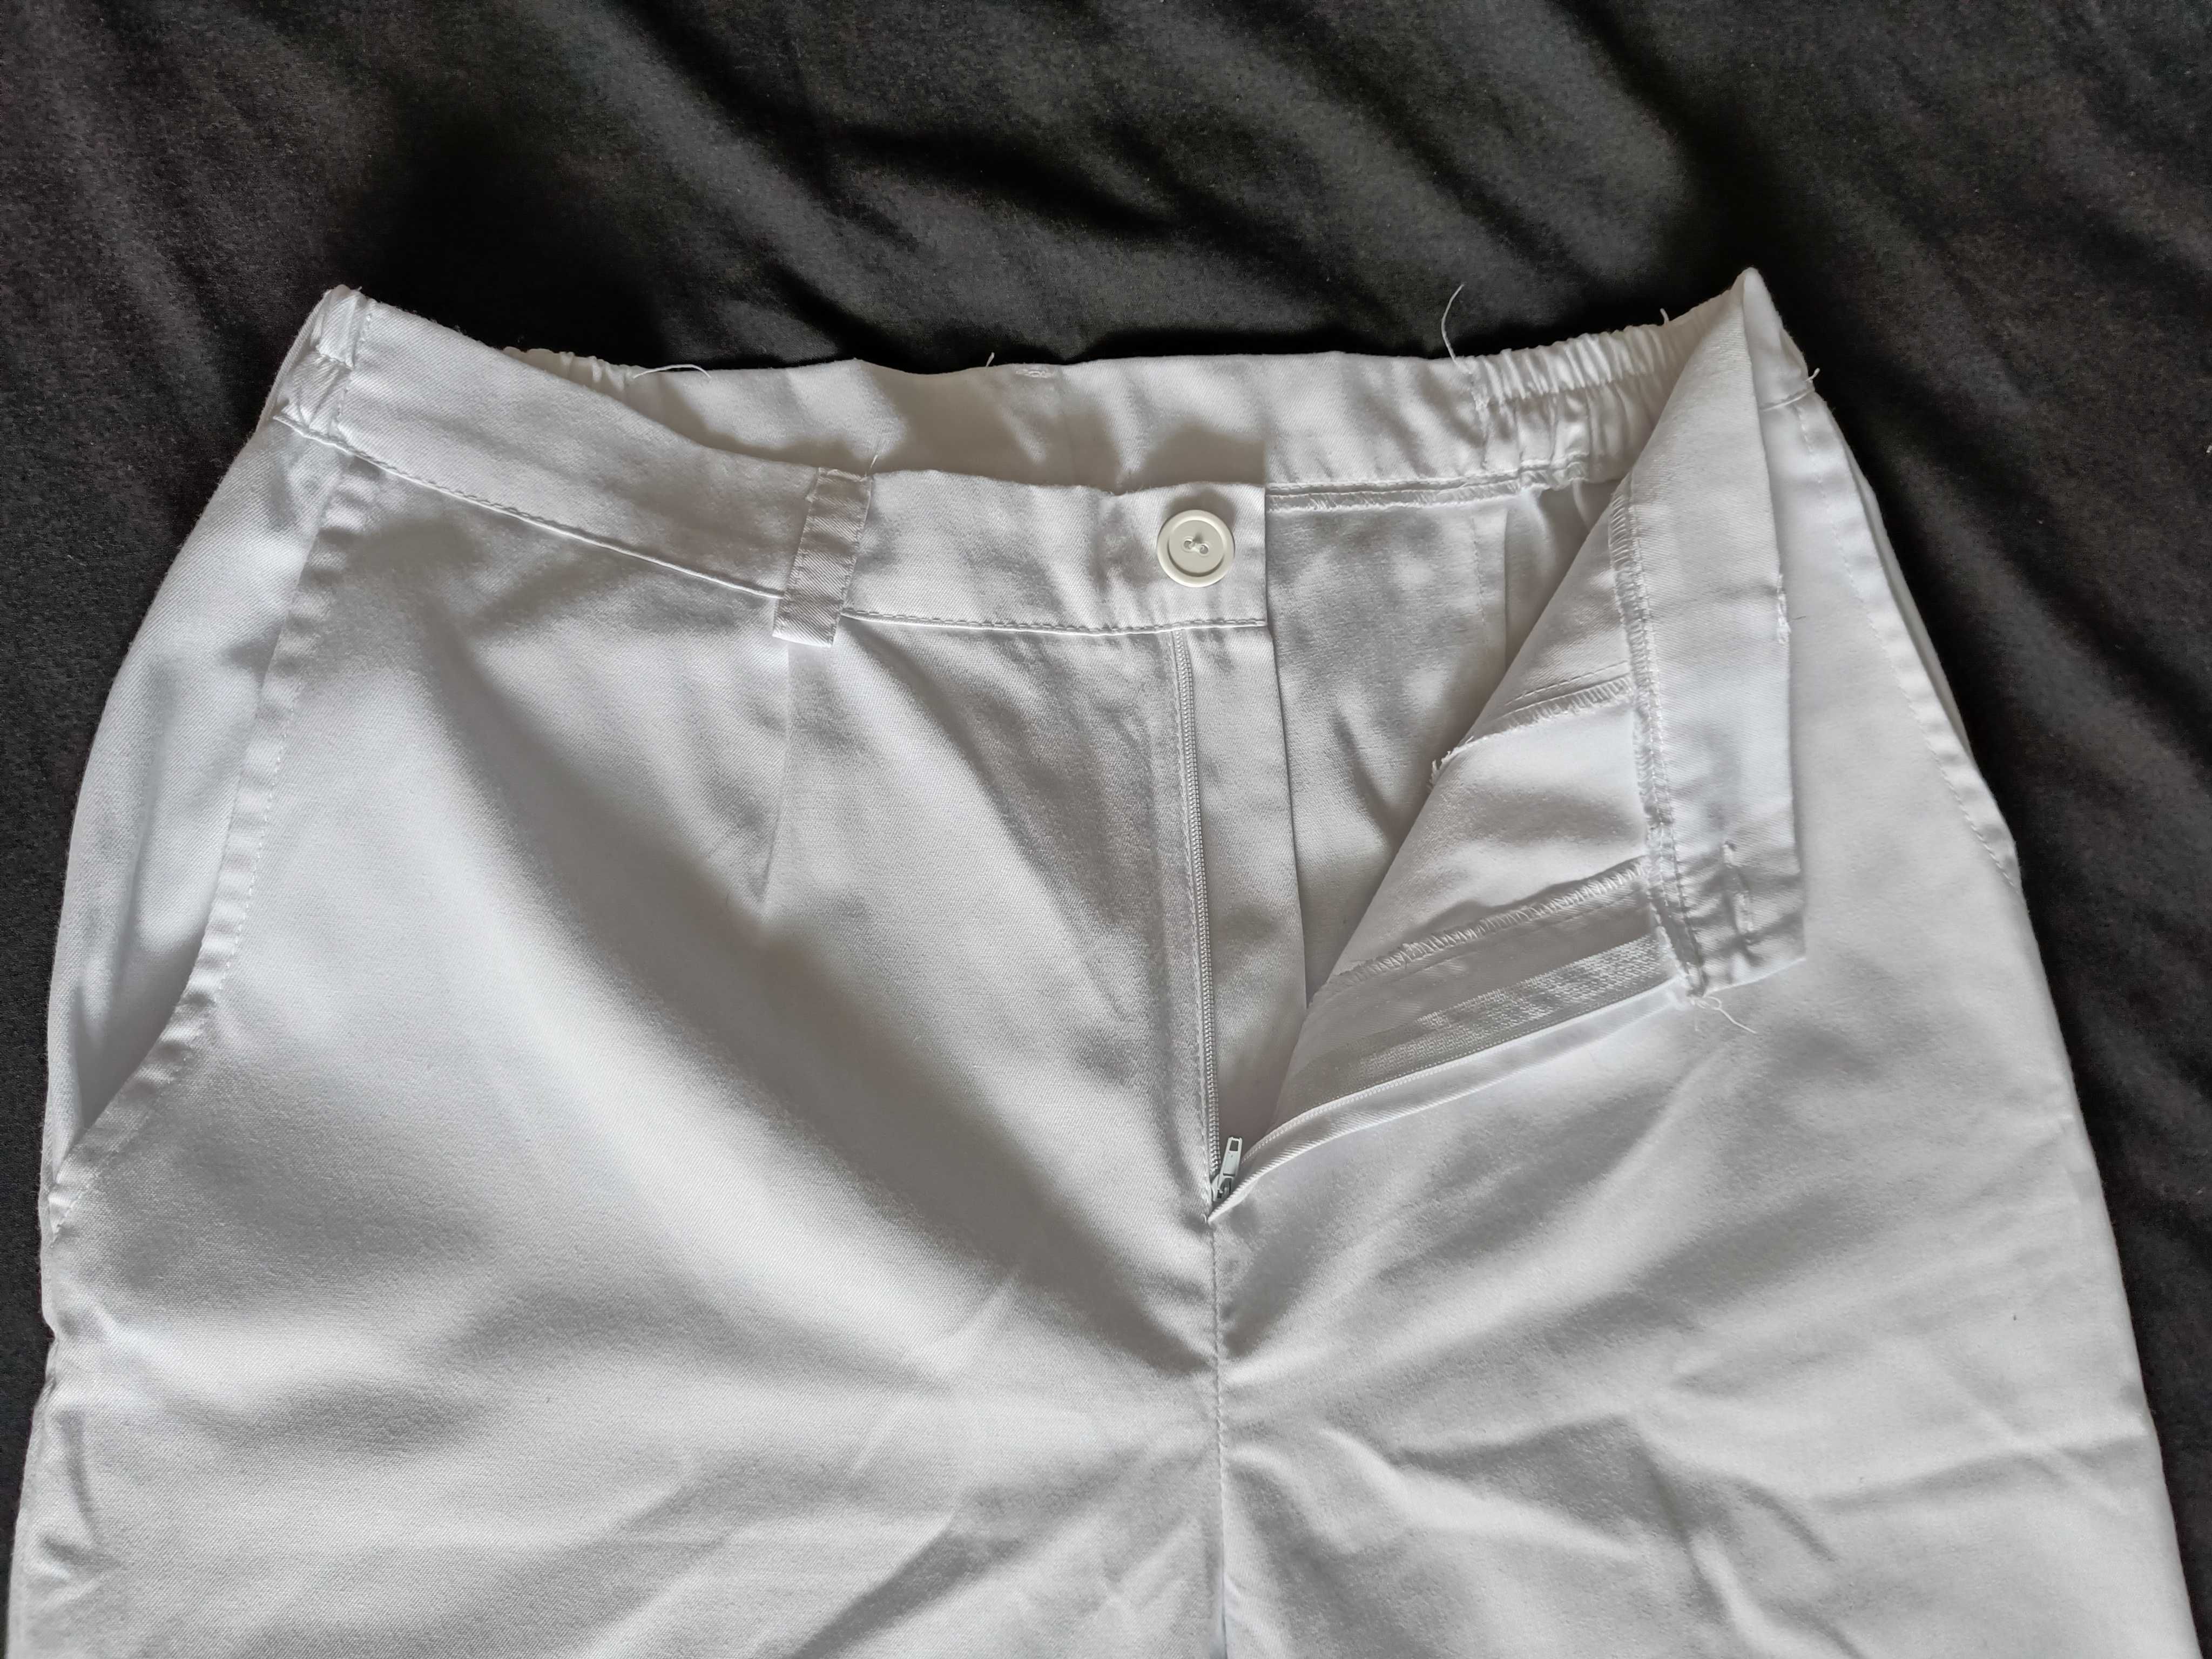 NOWE Białe spodnie męskie, medyczne rozmiar M  50  176cm